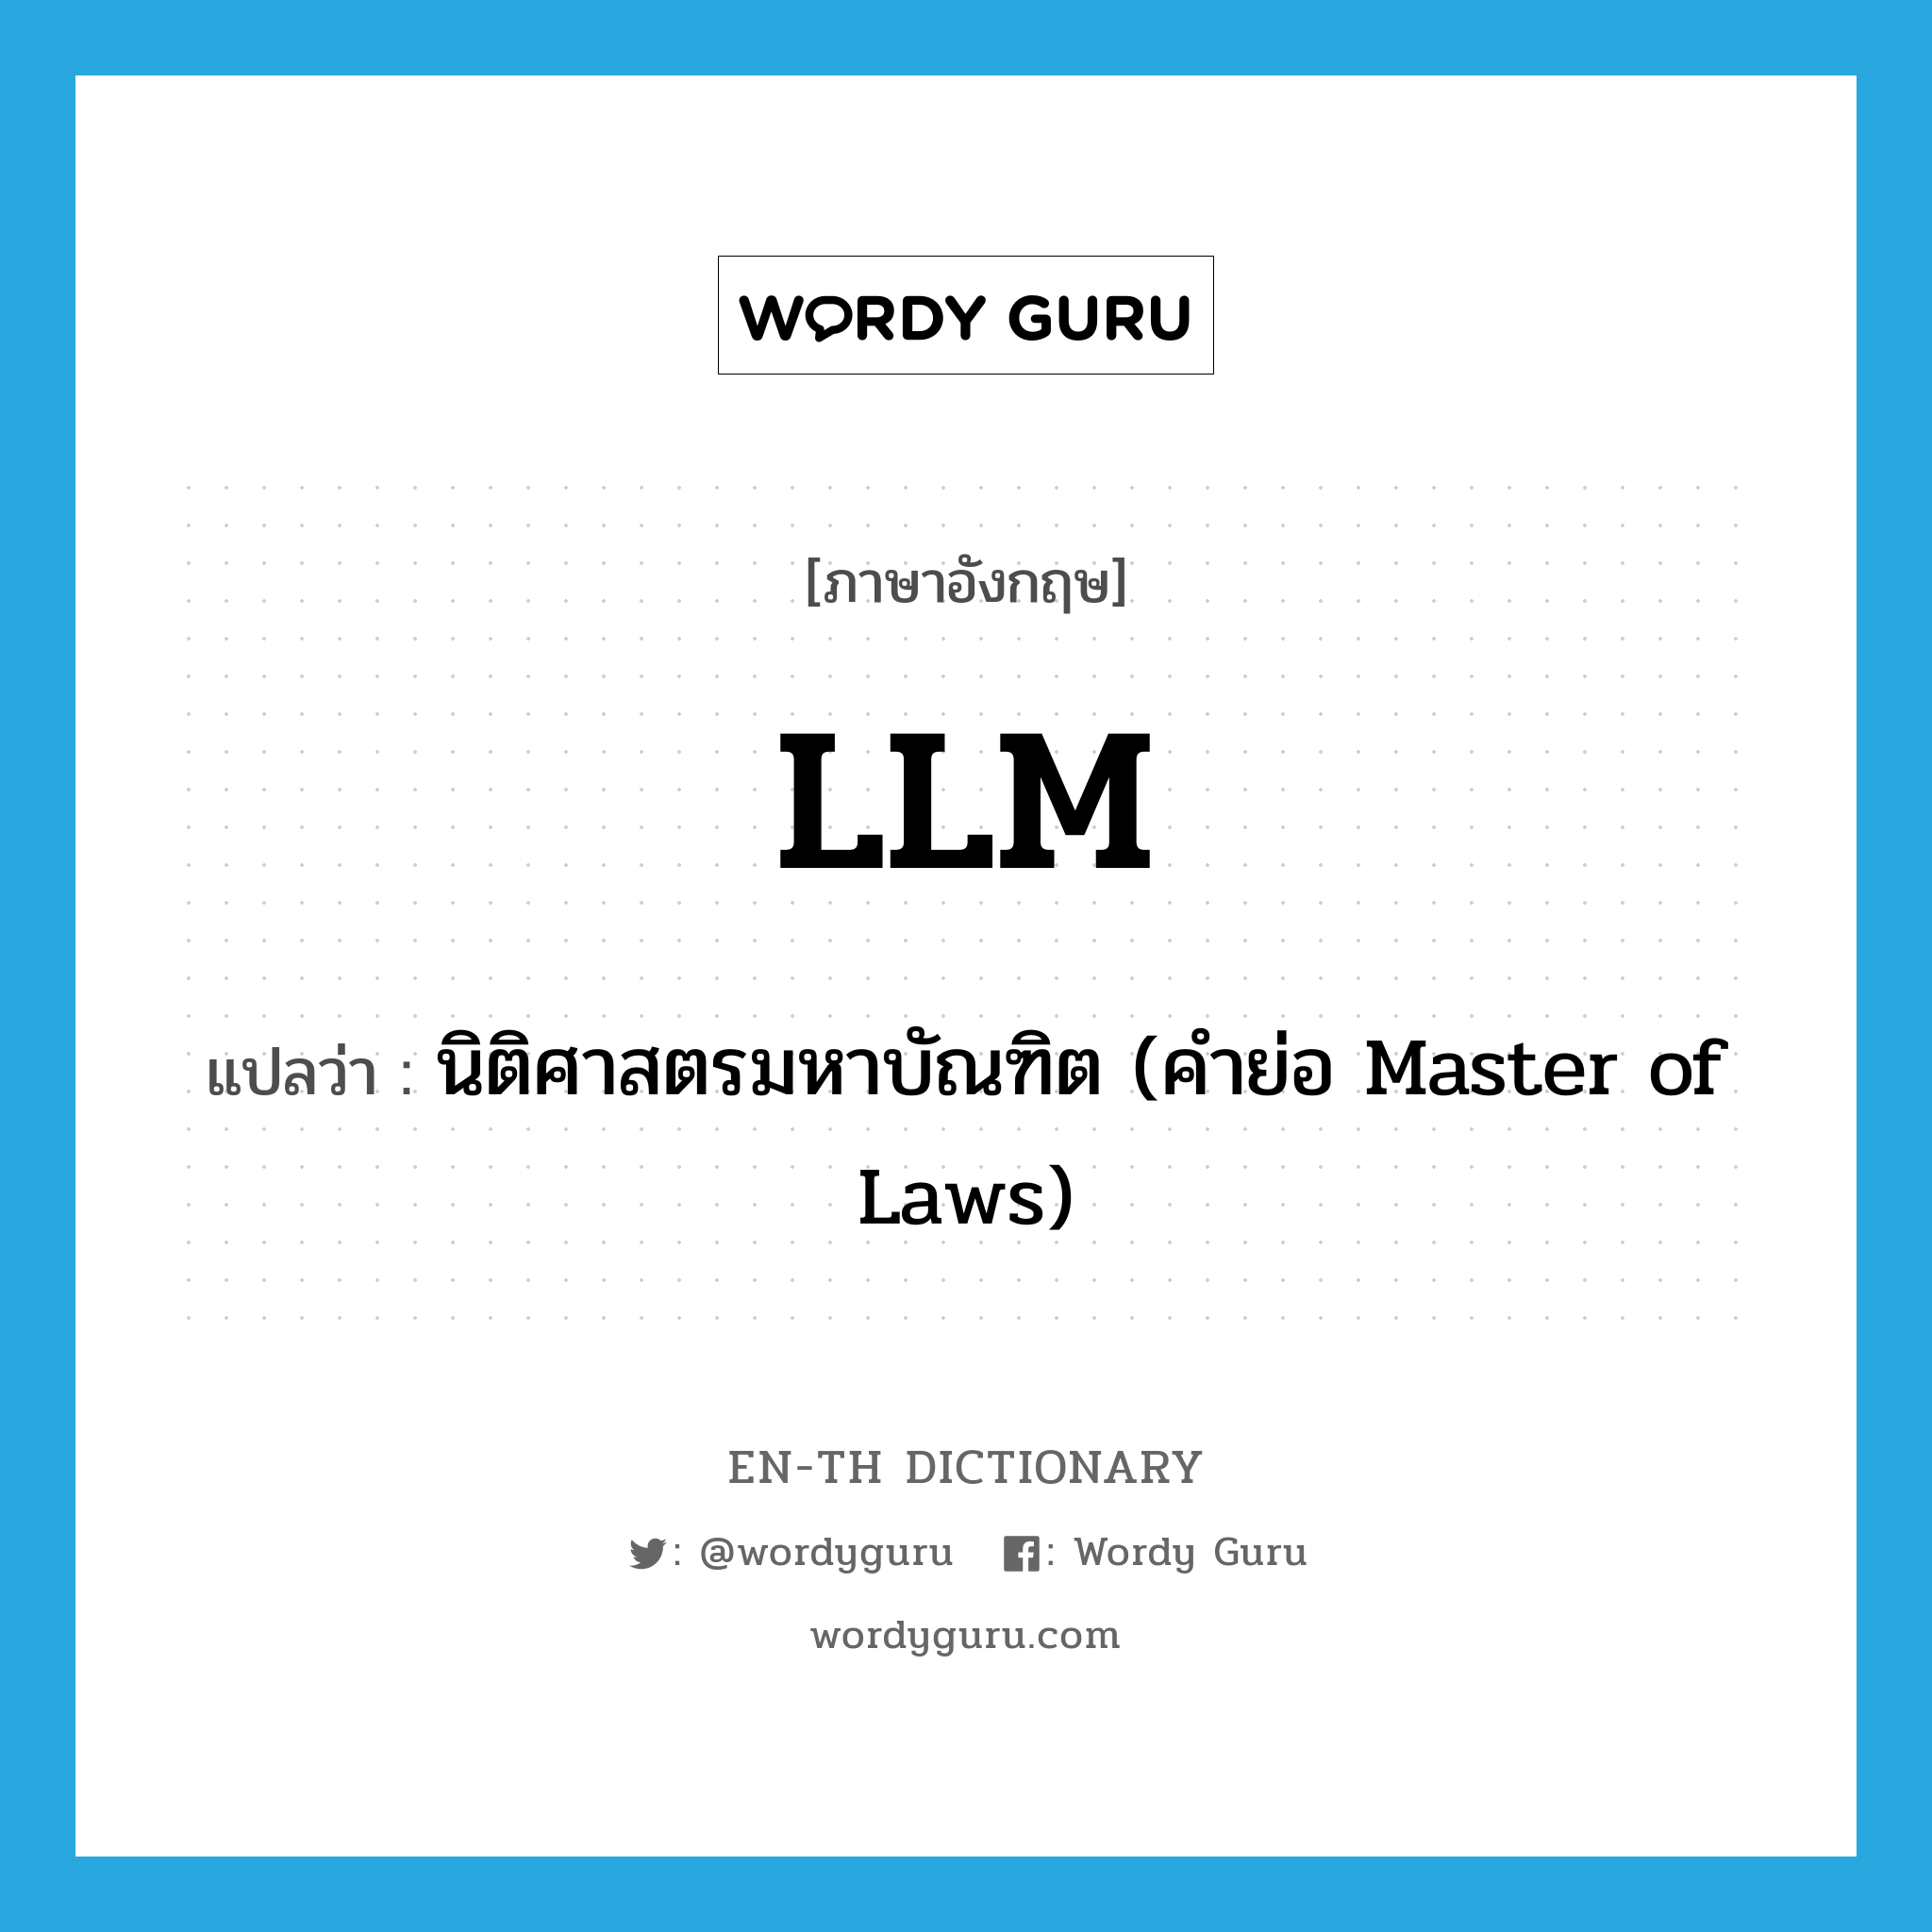 นิติศาสตรมหาบัณฑิต (คำย่อ Master of Laws) ภาษาอังกฤษ?, คำศัพท์ภาษาอังกฤษ นิติศาสตรมหาบัณฑิต (คำย่อ Master of Laws) แปลว่า LLM ประเภท ABBR หมวด ABBR